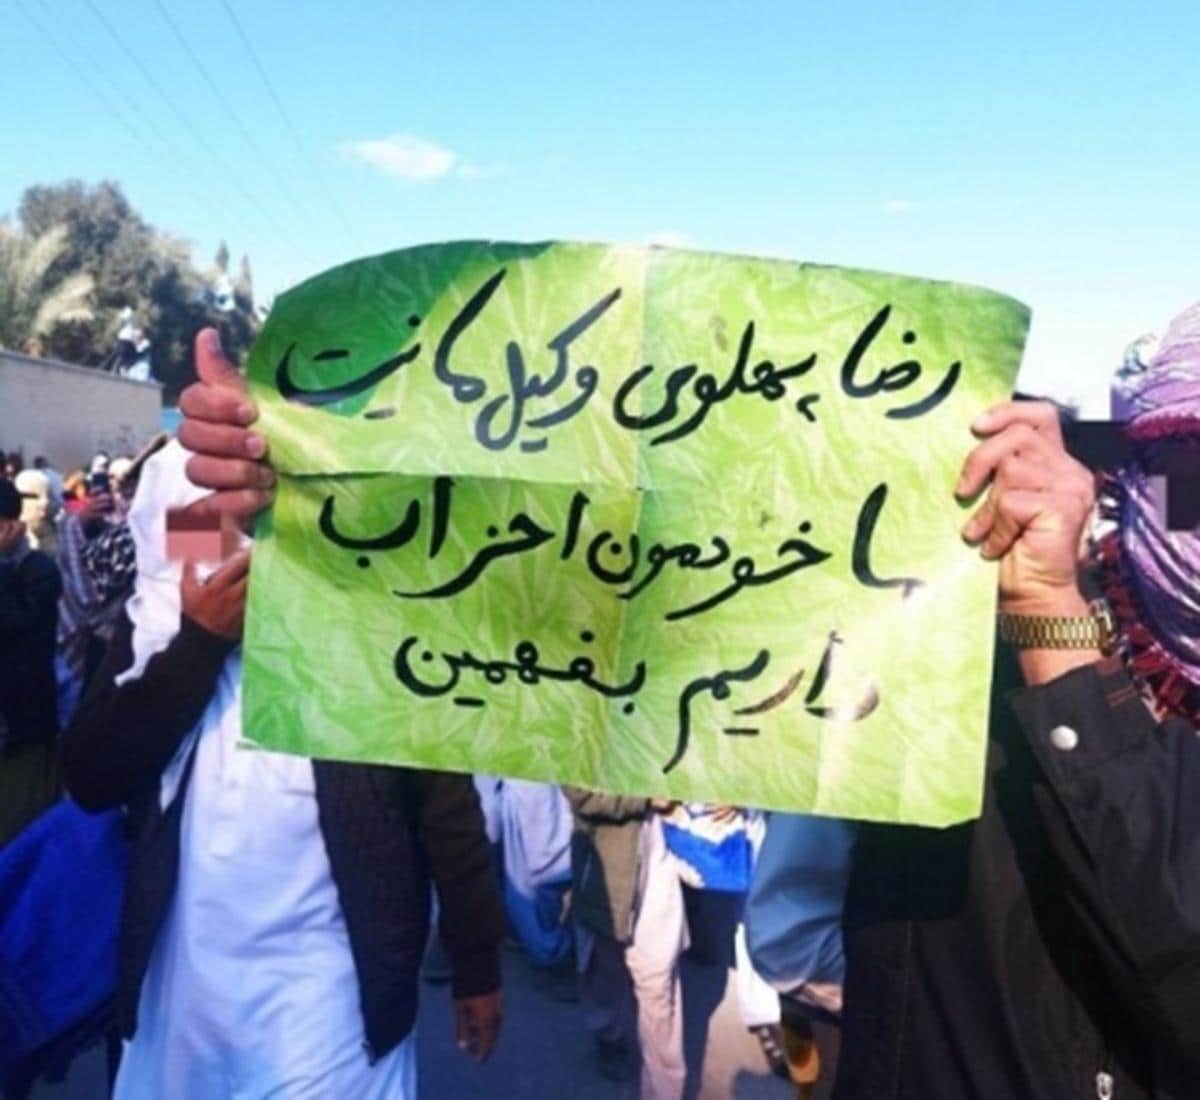 Una pancarta sostenida por manifestantes baluchis lee: "Reza Pahlavi no es nuestro representante. Comprendan que tenemos nuestros propios partidos". (Fuente: Twitter)